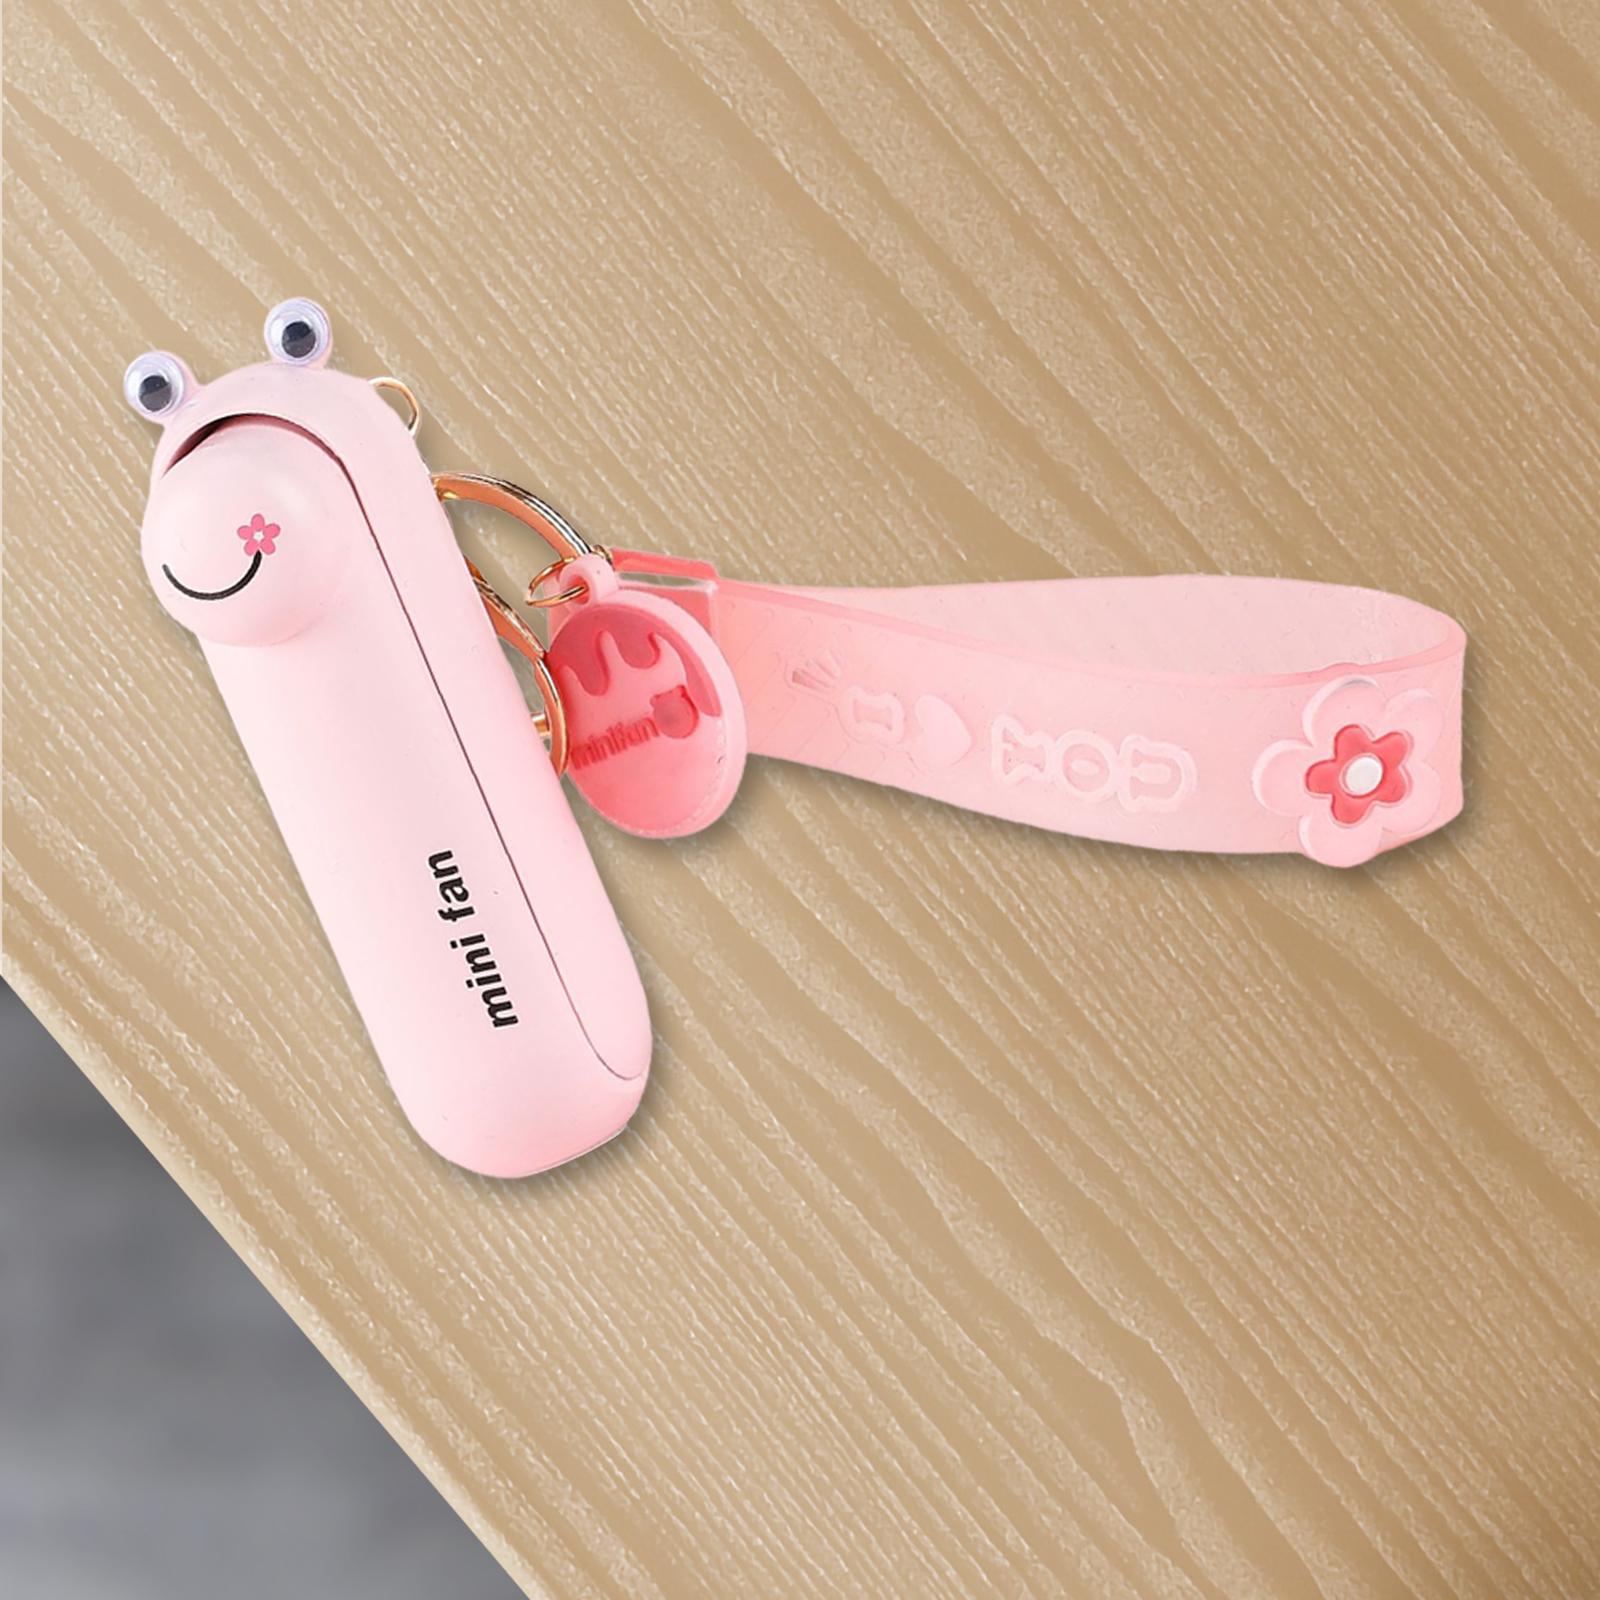 Keychain Fan Portable Mini Fan USB Pocket Fan for Home Outdoor Sports Travel Frog Pink